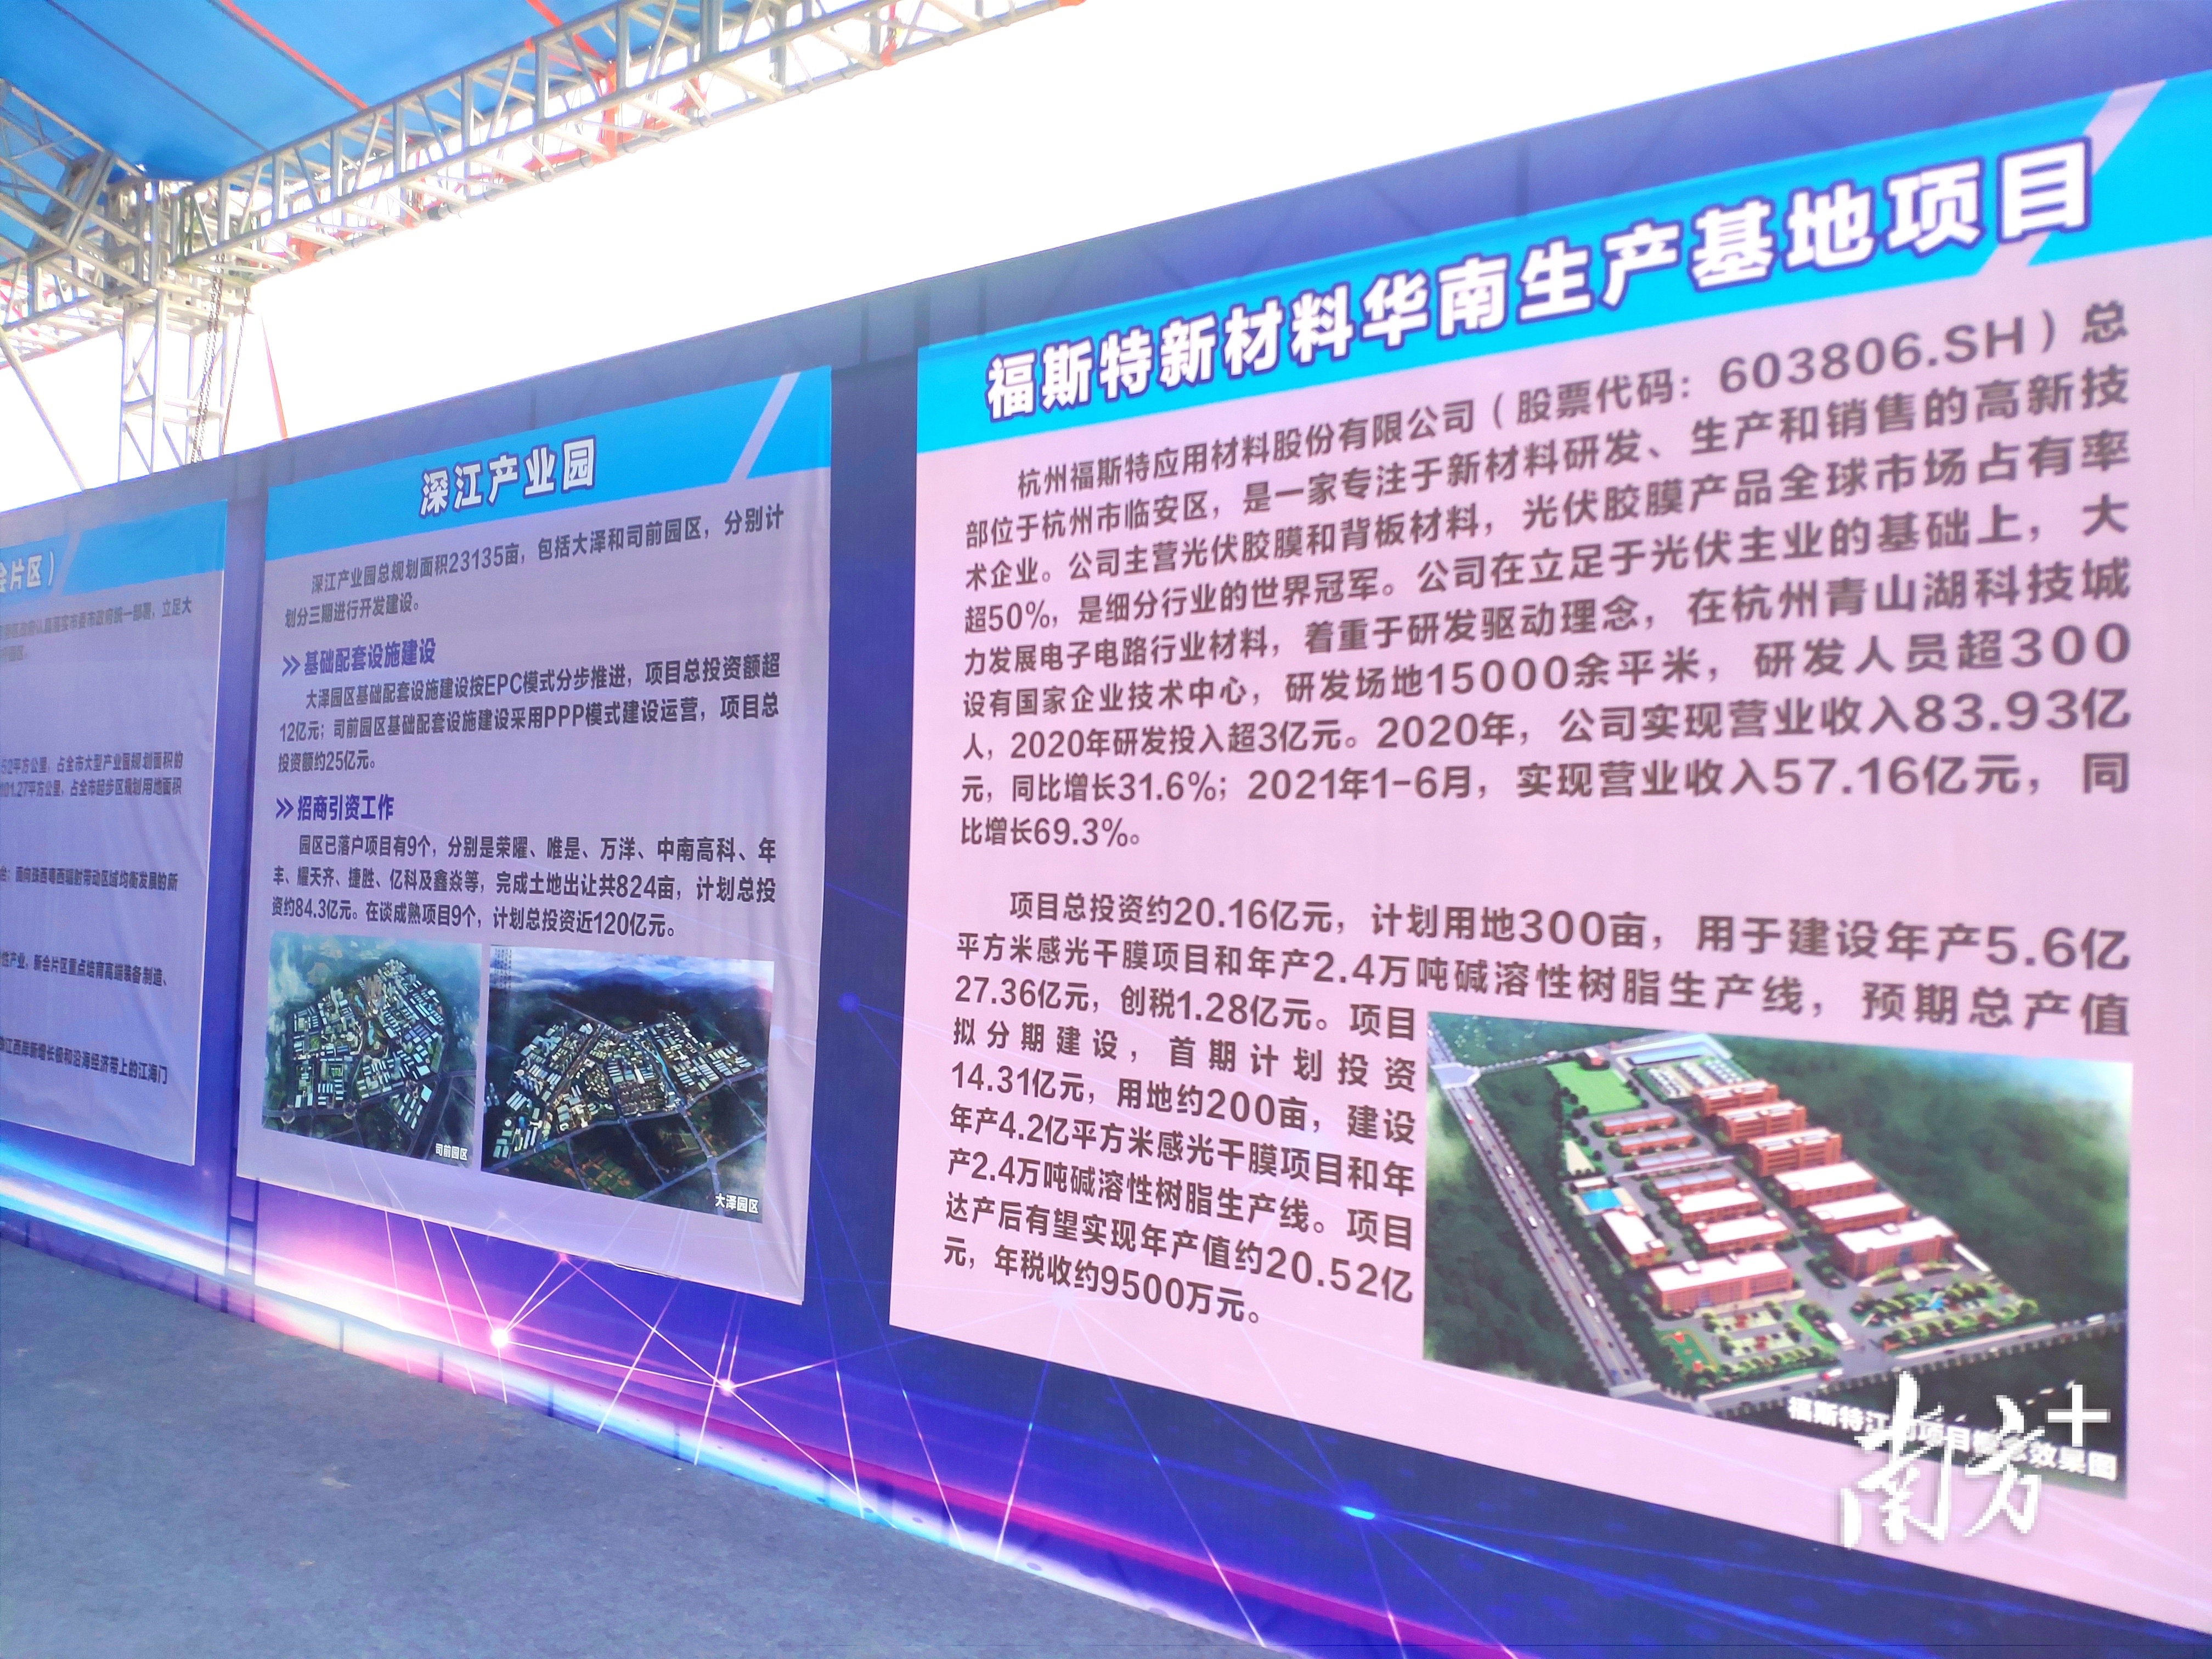 福斯特新材料华南生产基地项目介绍。黄绍侦 摄